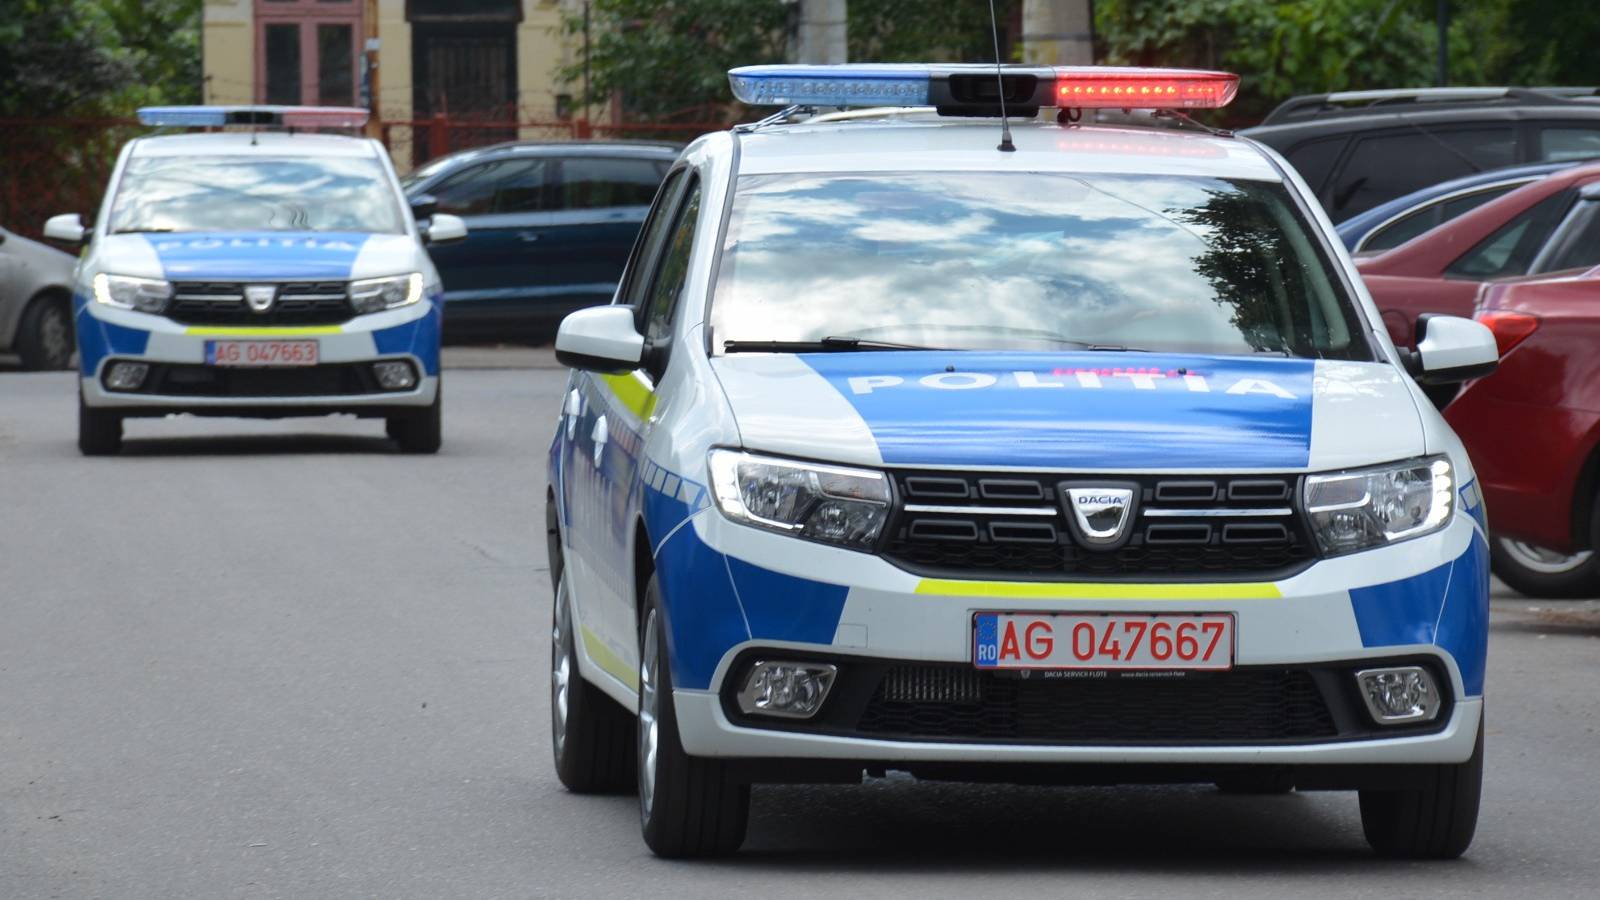 Romanian poliisi varoittaa traktoreista yleisillä teillä